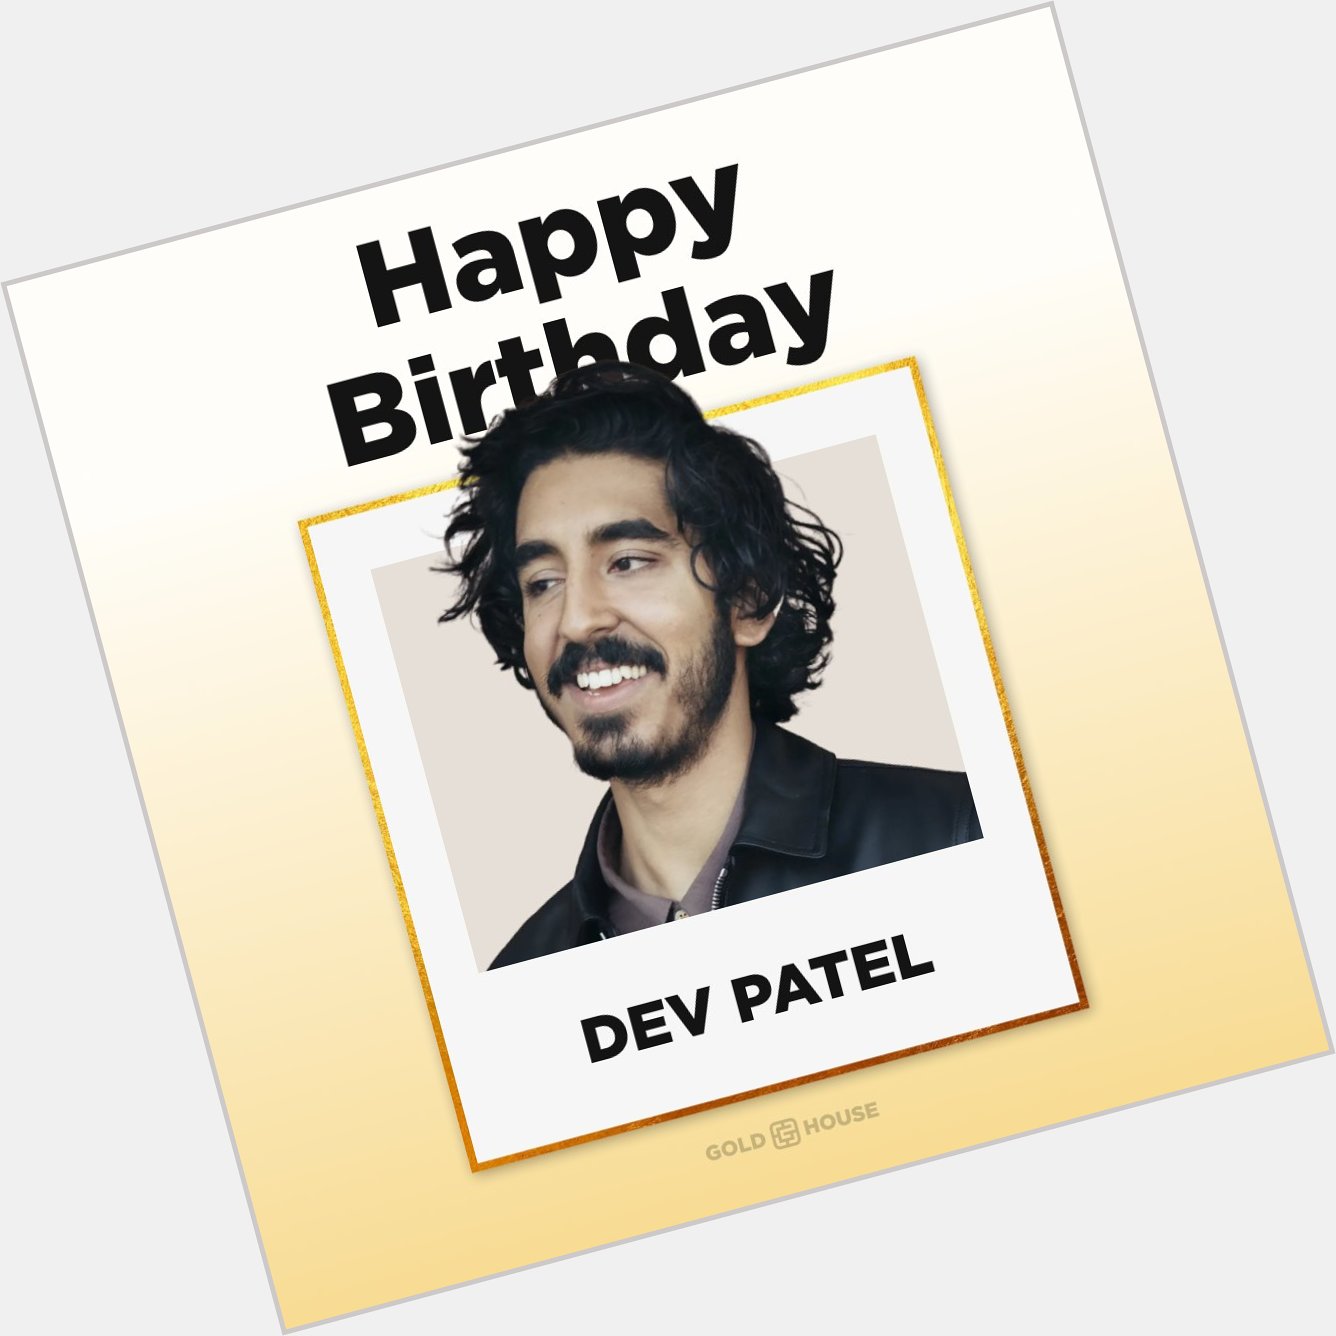 Happy birthday, Dev Patel! 